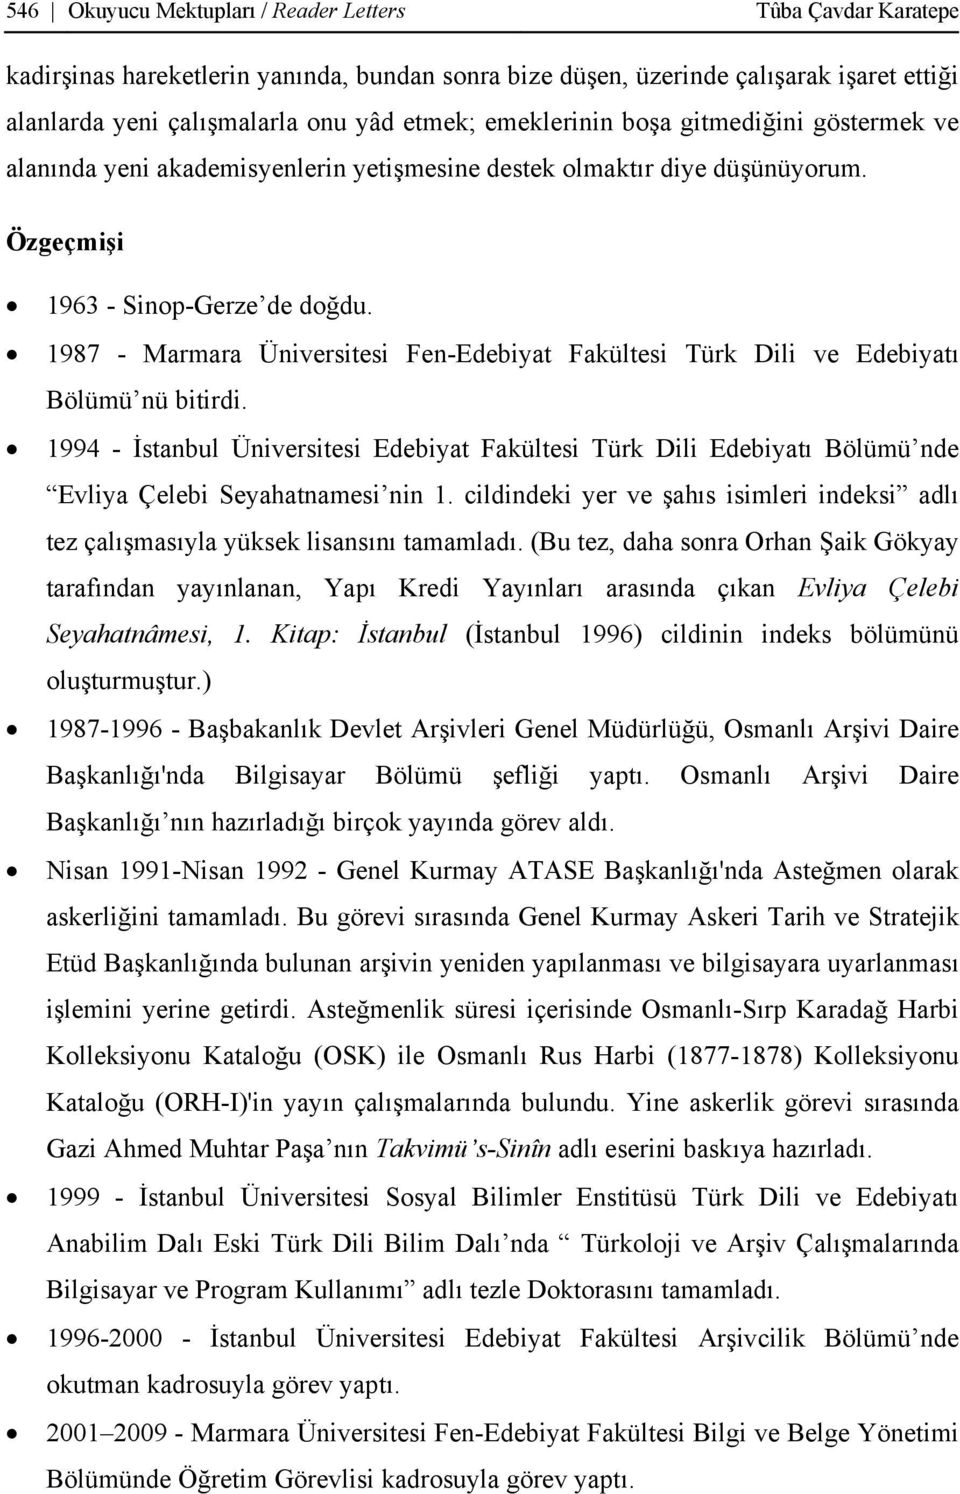 1987 - Marmara Üniversitesi Fen-Edebiyat Fakültesi Türk Dili ve Edebiyatı Bölümü nü bitirdi.